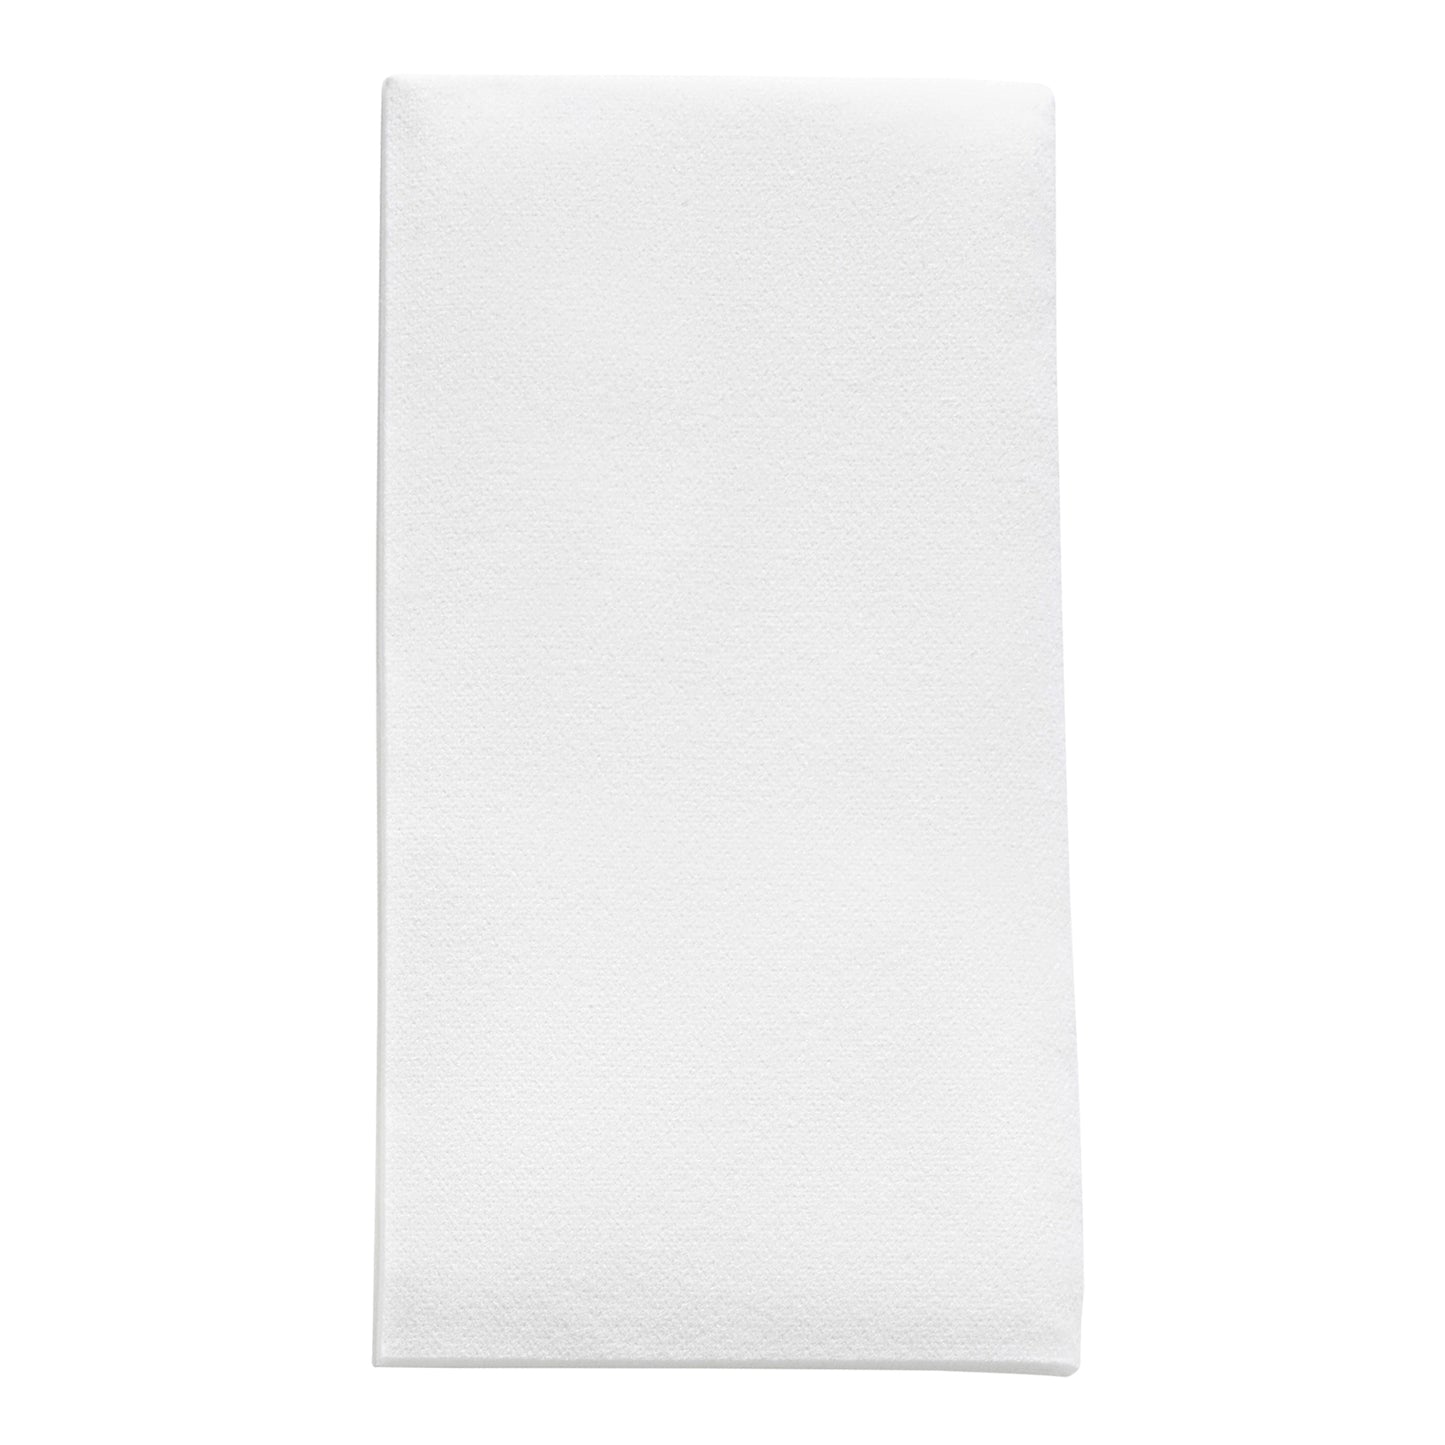 White Premium Linen-Like Paper Buffet Napkins